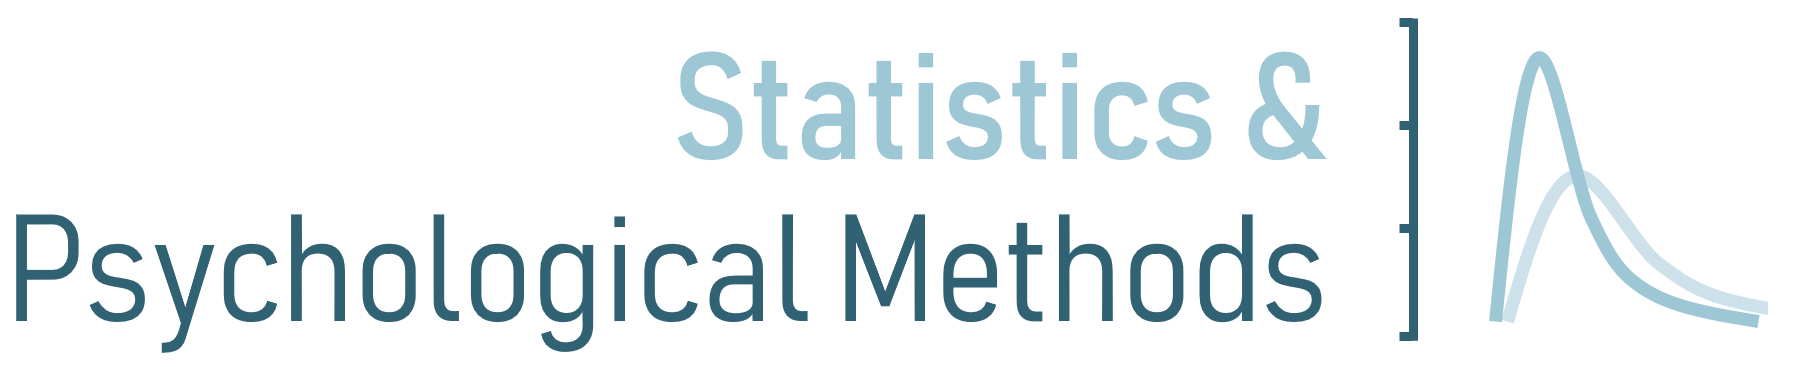 Statistics & Psychological Methods